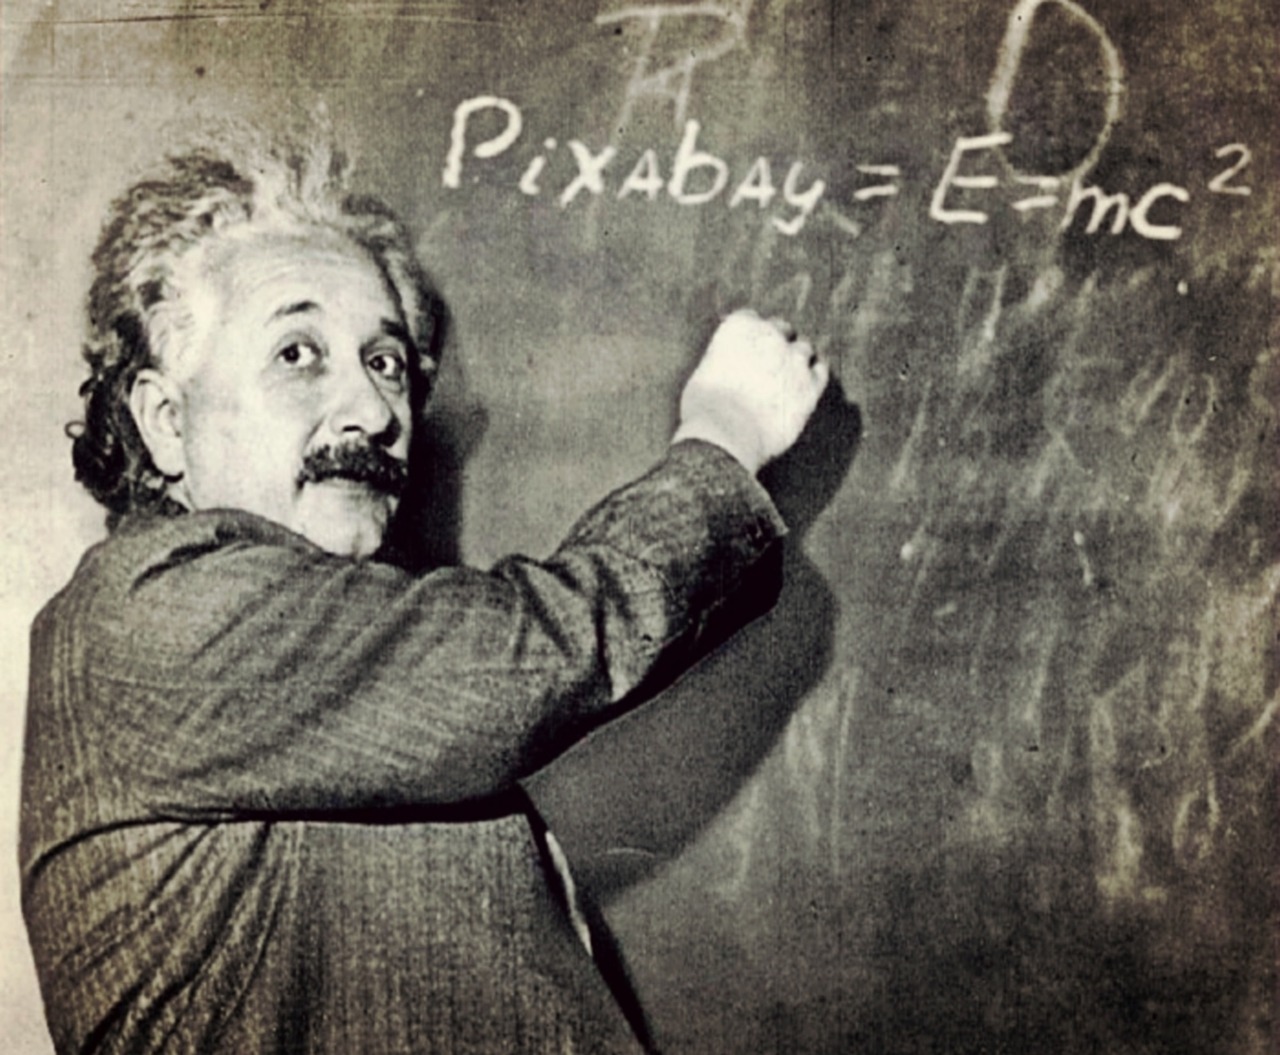 Einšteinas, Profesorius, Humoras, Formulė, Nobelio Premijos Laureatas, Vyras, Reliatyvumo Teorija, Lenta, Genijus, Palikti